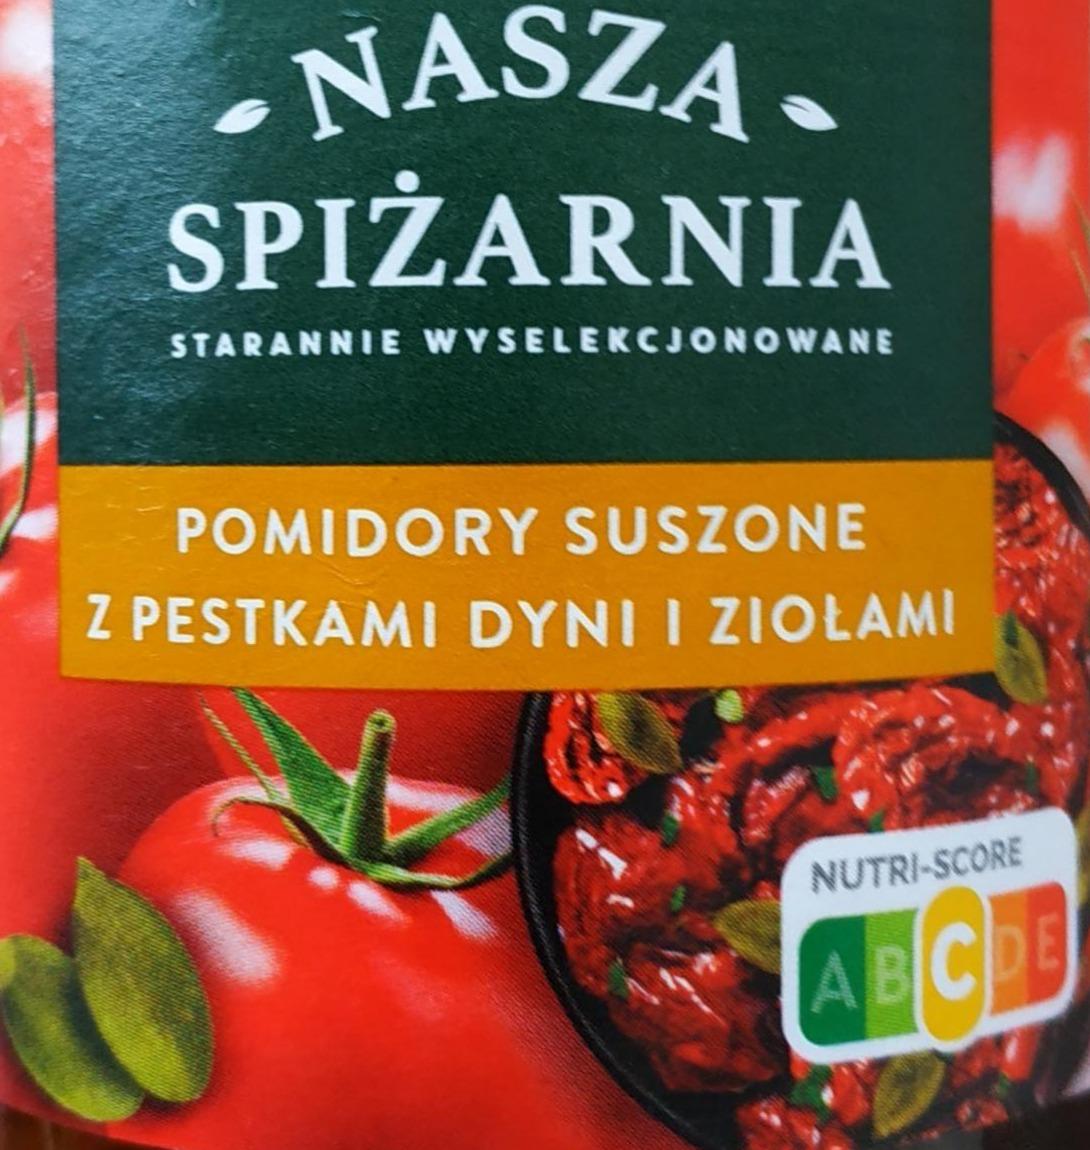 Фото - Pomidory suszone w oleju z ziolami z pestkami dyni Nasza Spiżarnia